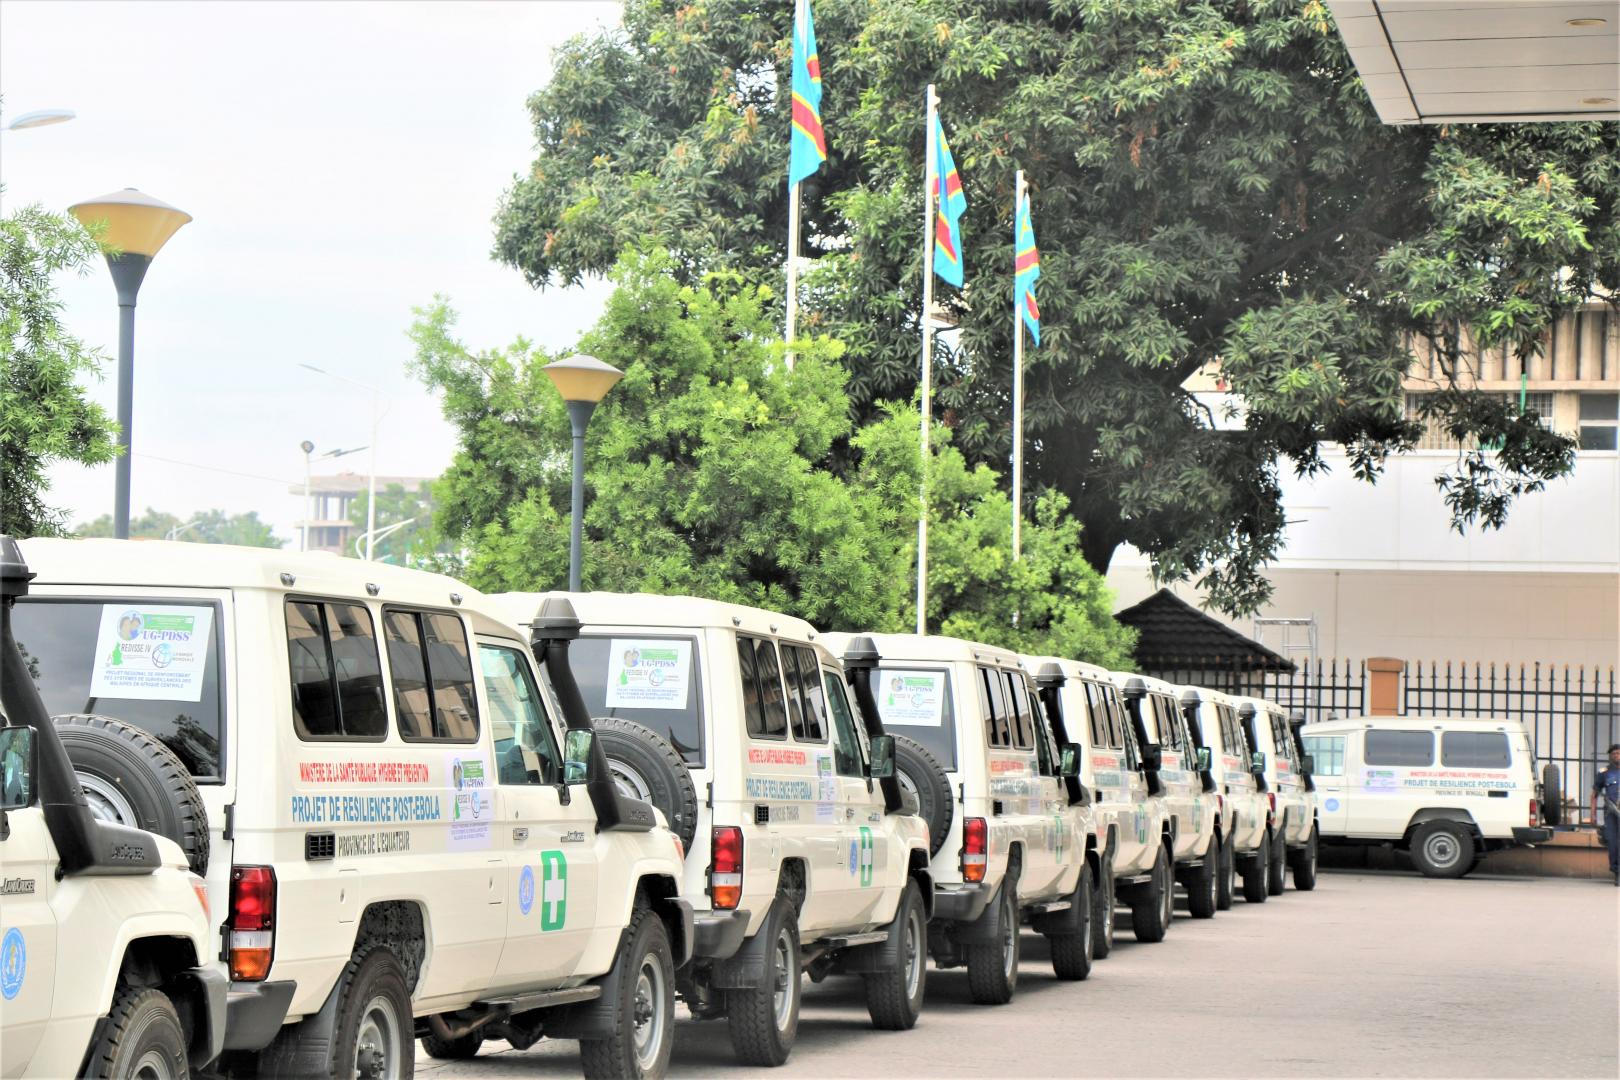 Les ambulances remisent ce jour au ministre de la Santé, Hygiène et Prévention